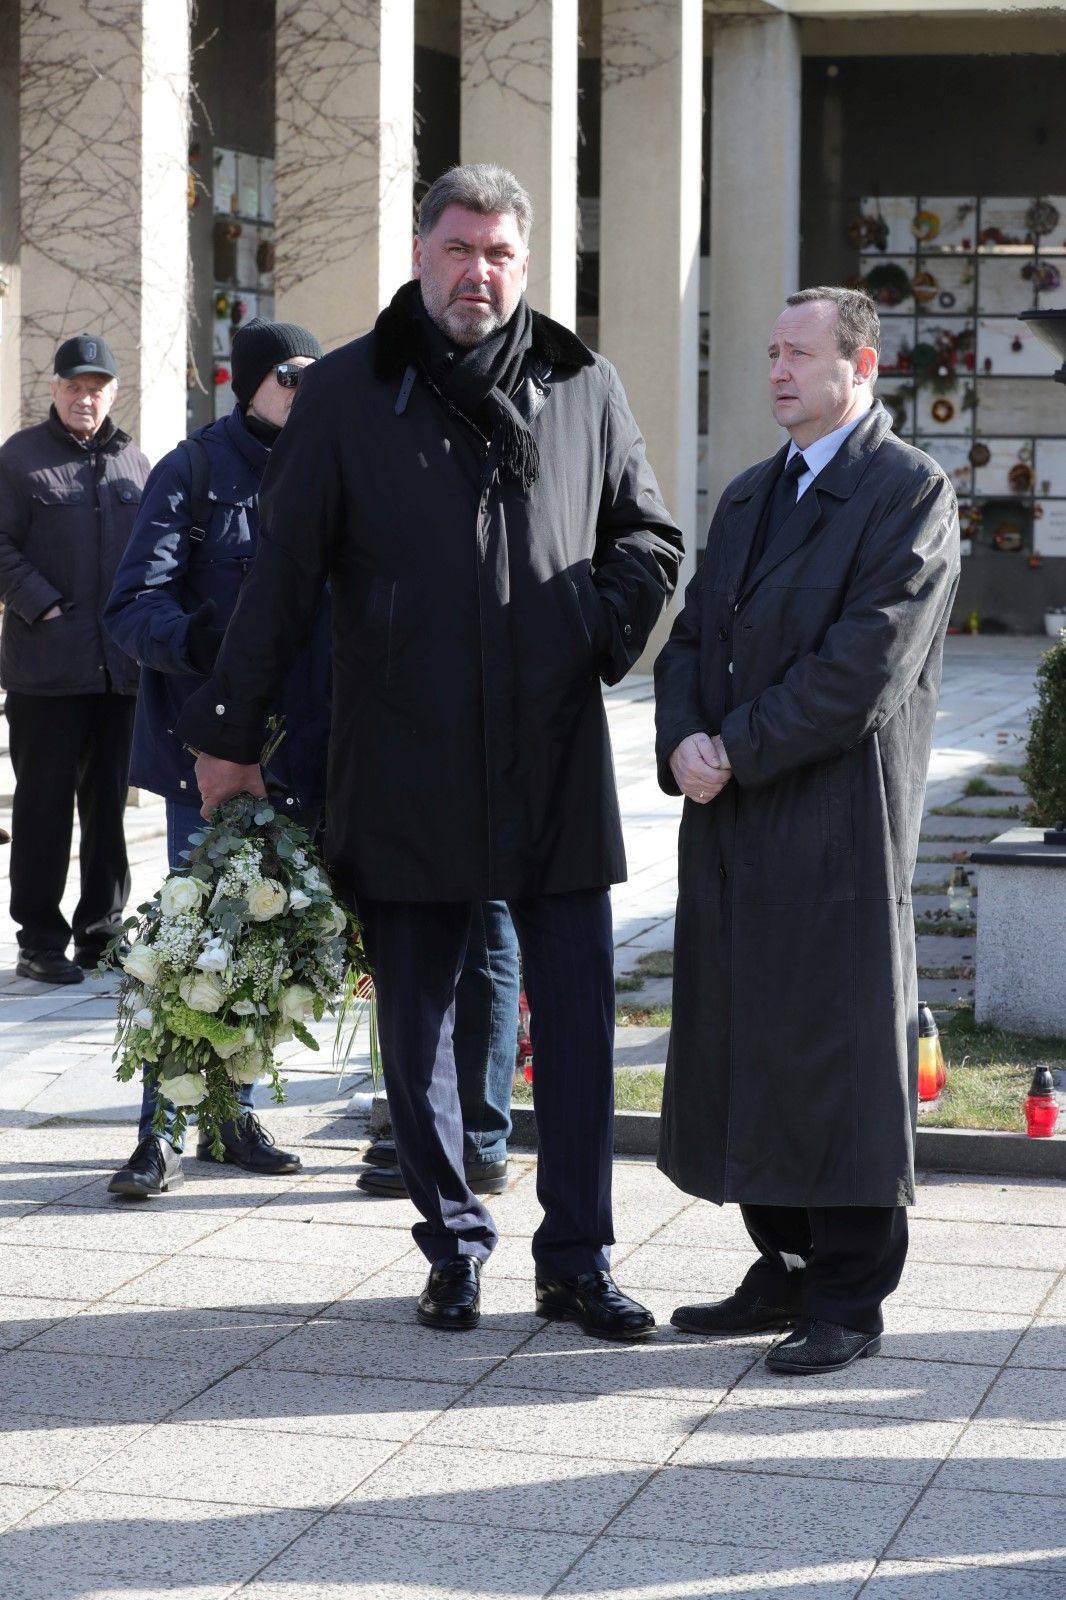 Sám Zeman na pohřeb nedorazí, rozloučit se ale přišel poradce prezidenta Martin Nejedlý 